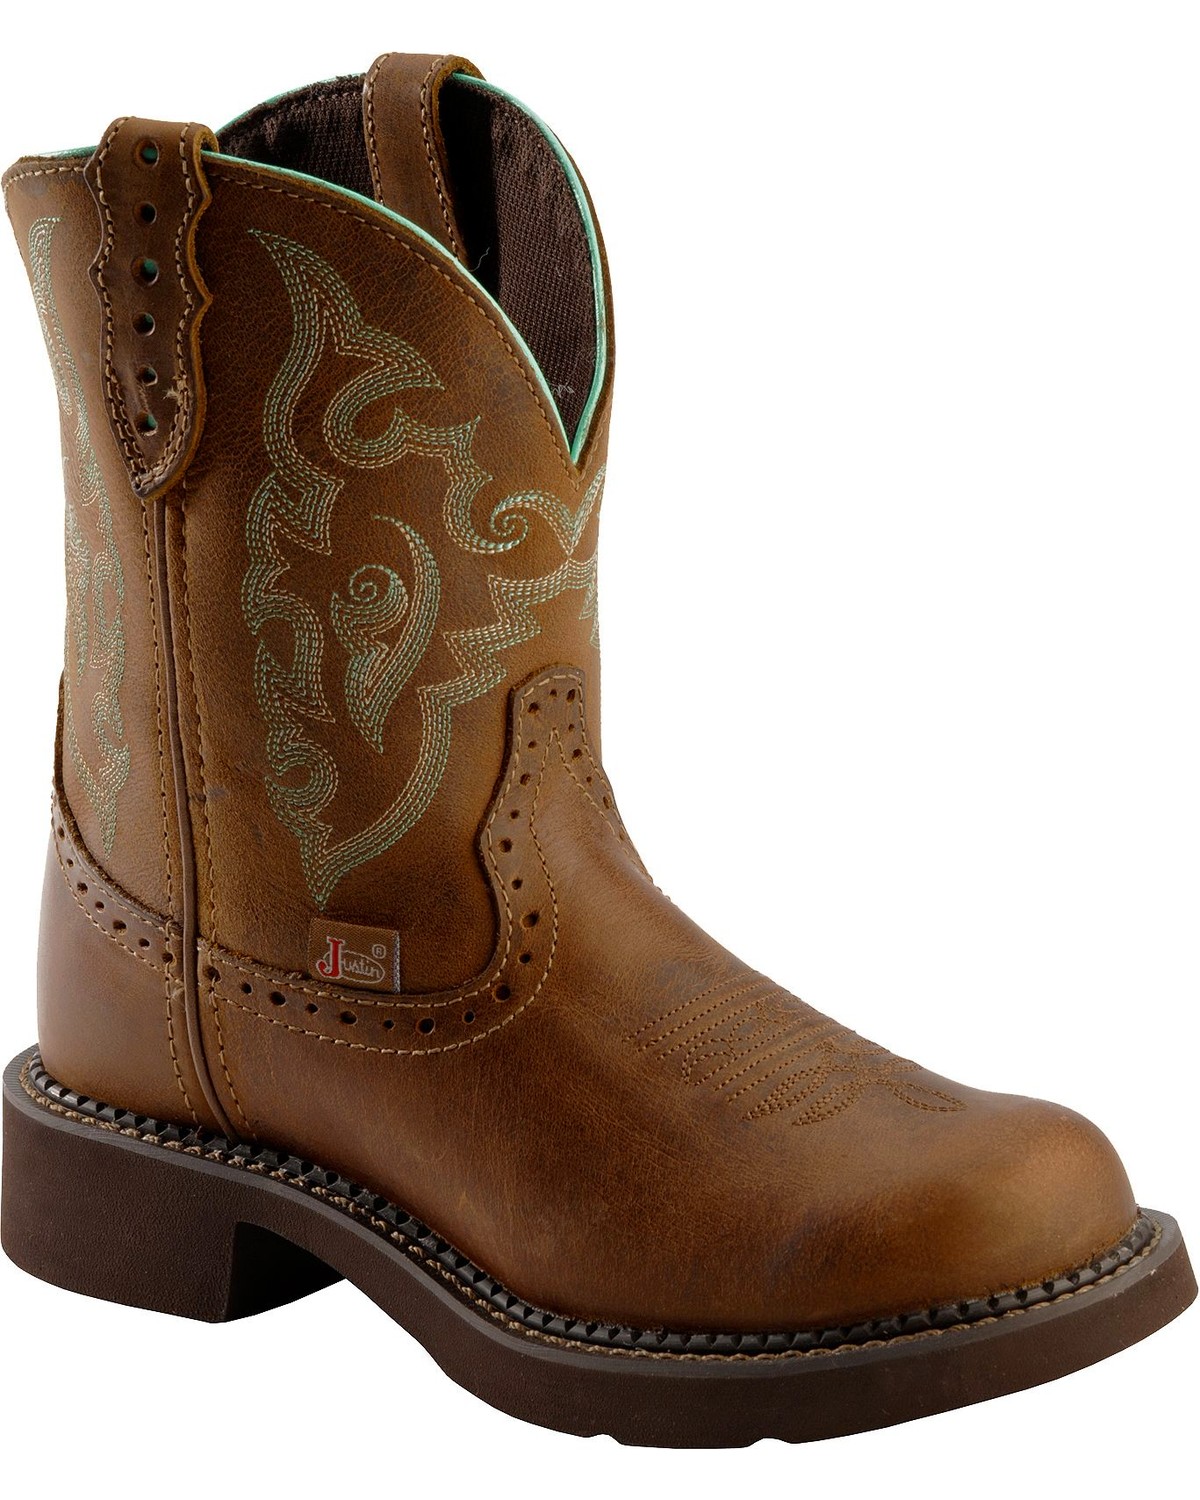 womens steel toe western boots